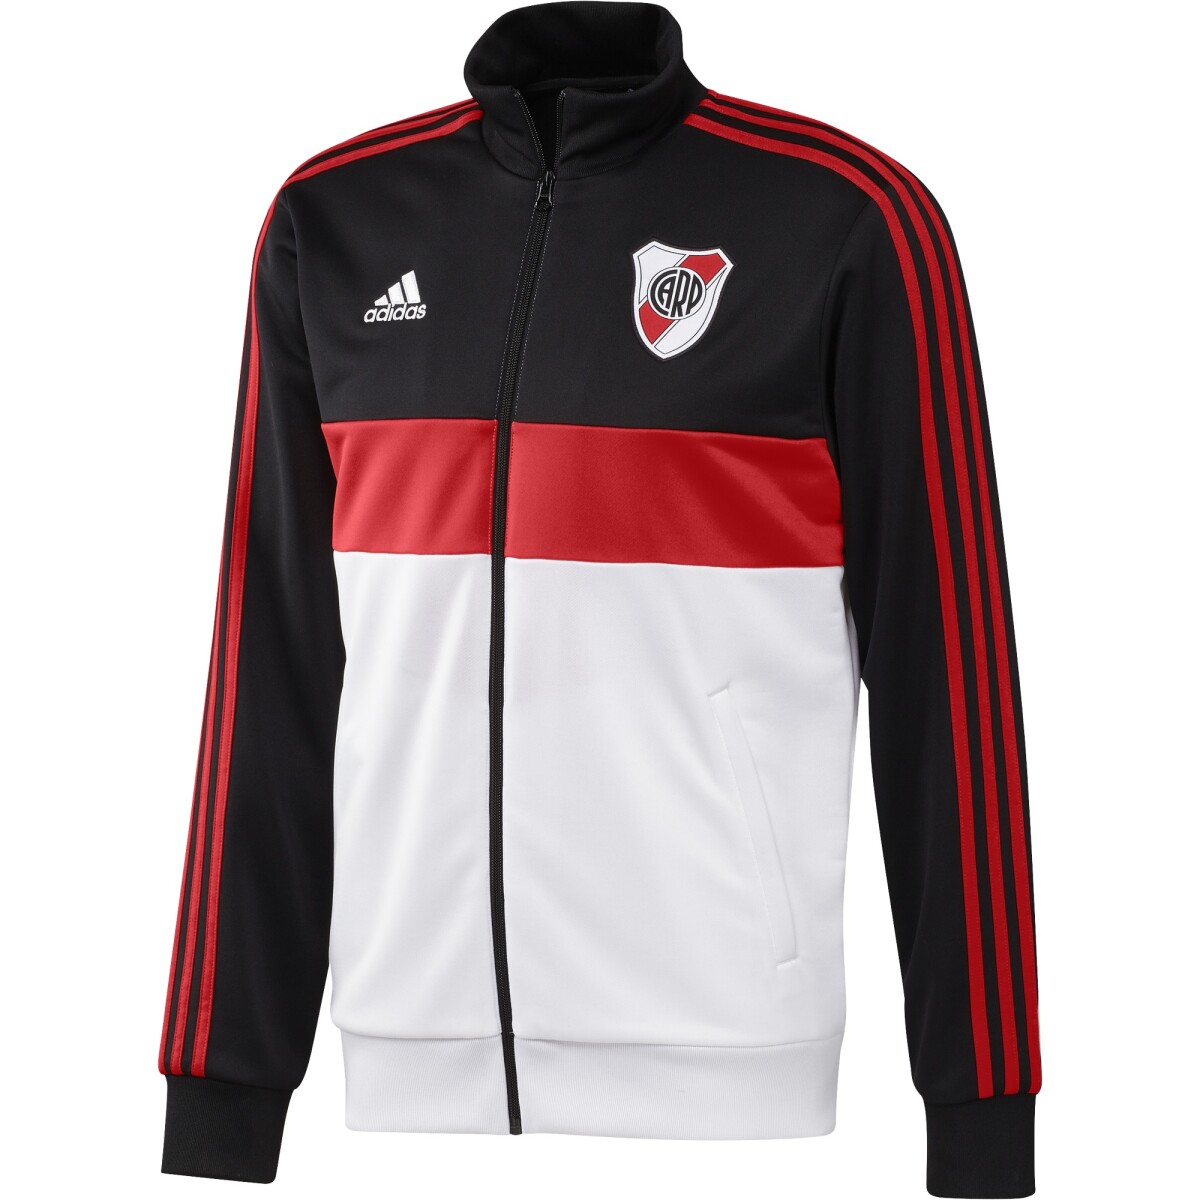 Campera Adidas Futbol Hombre River Plate 3S Trk Top - S/C 